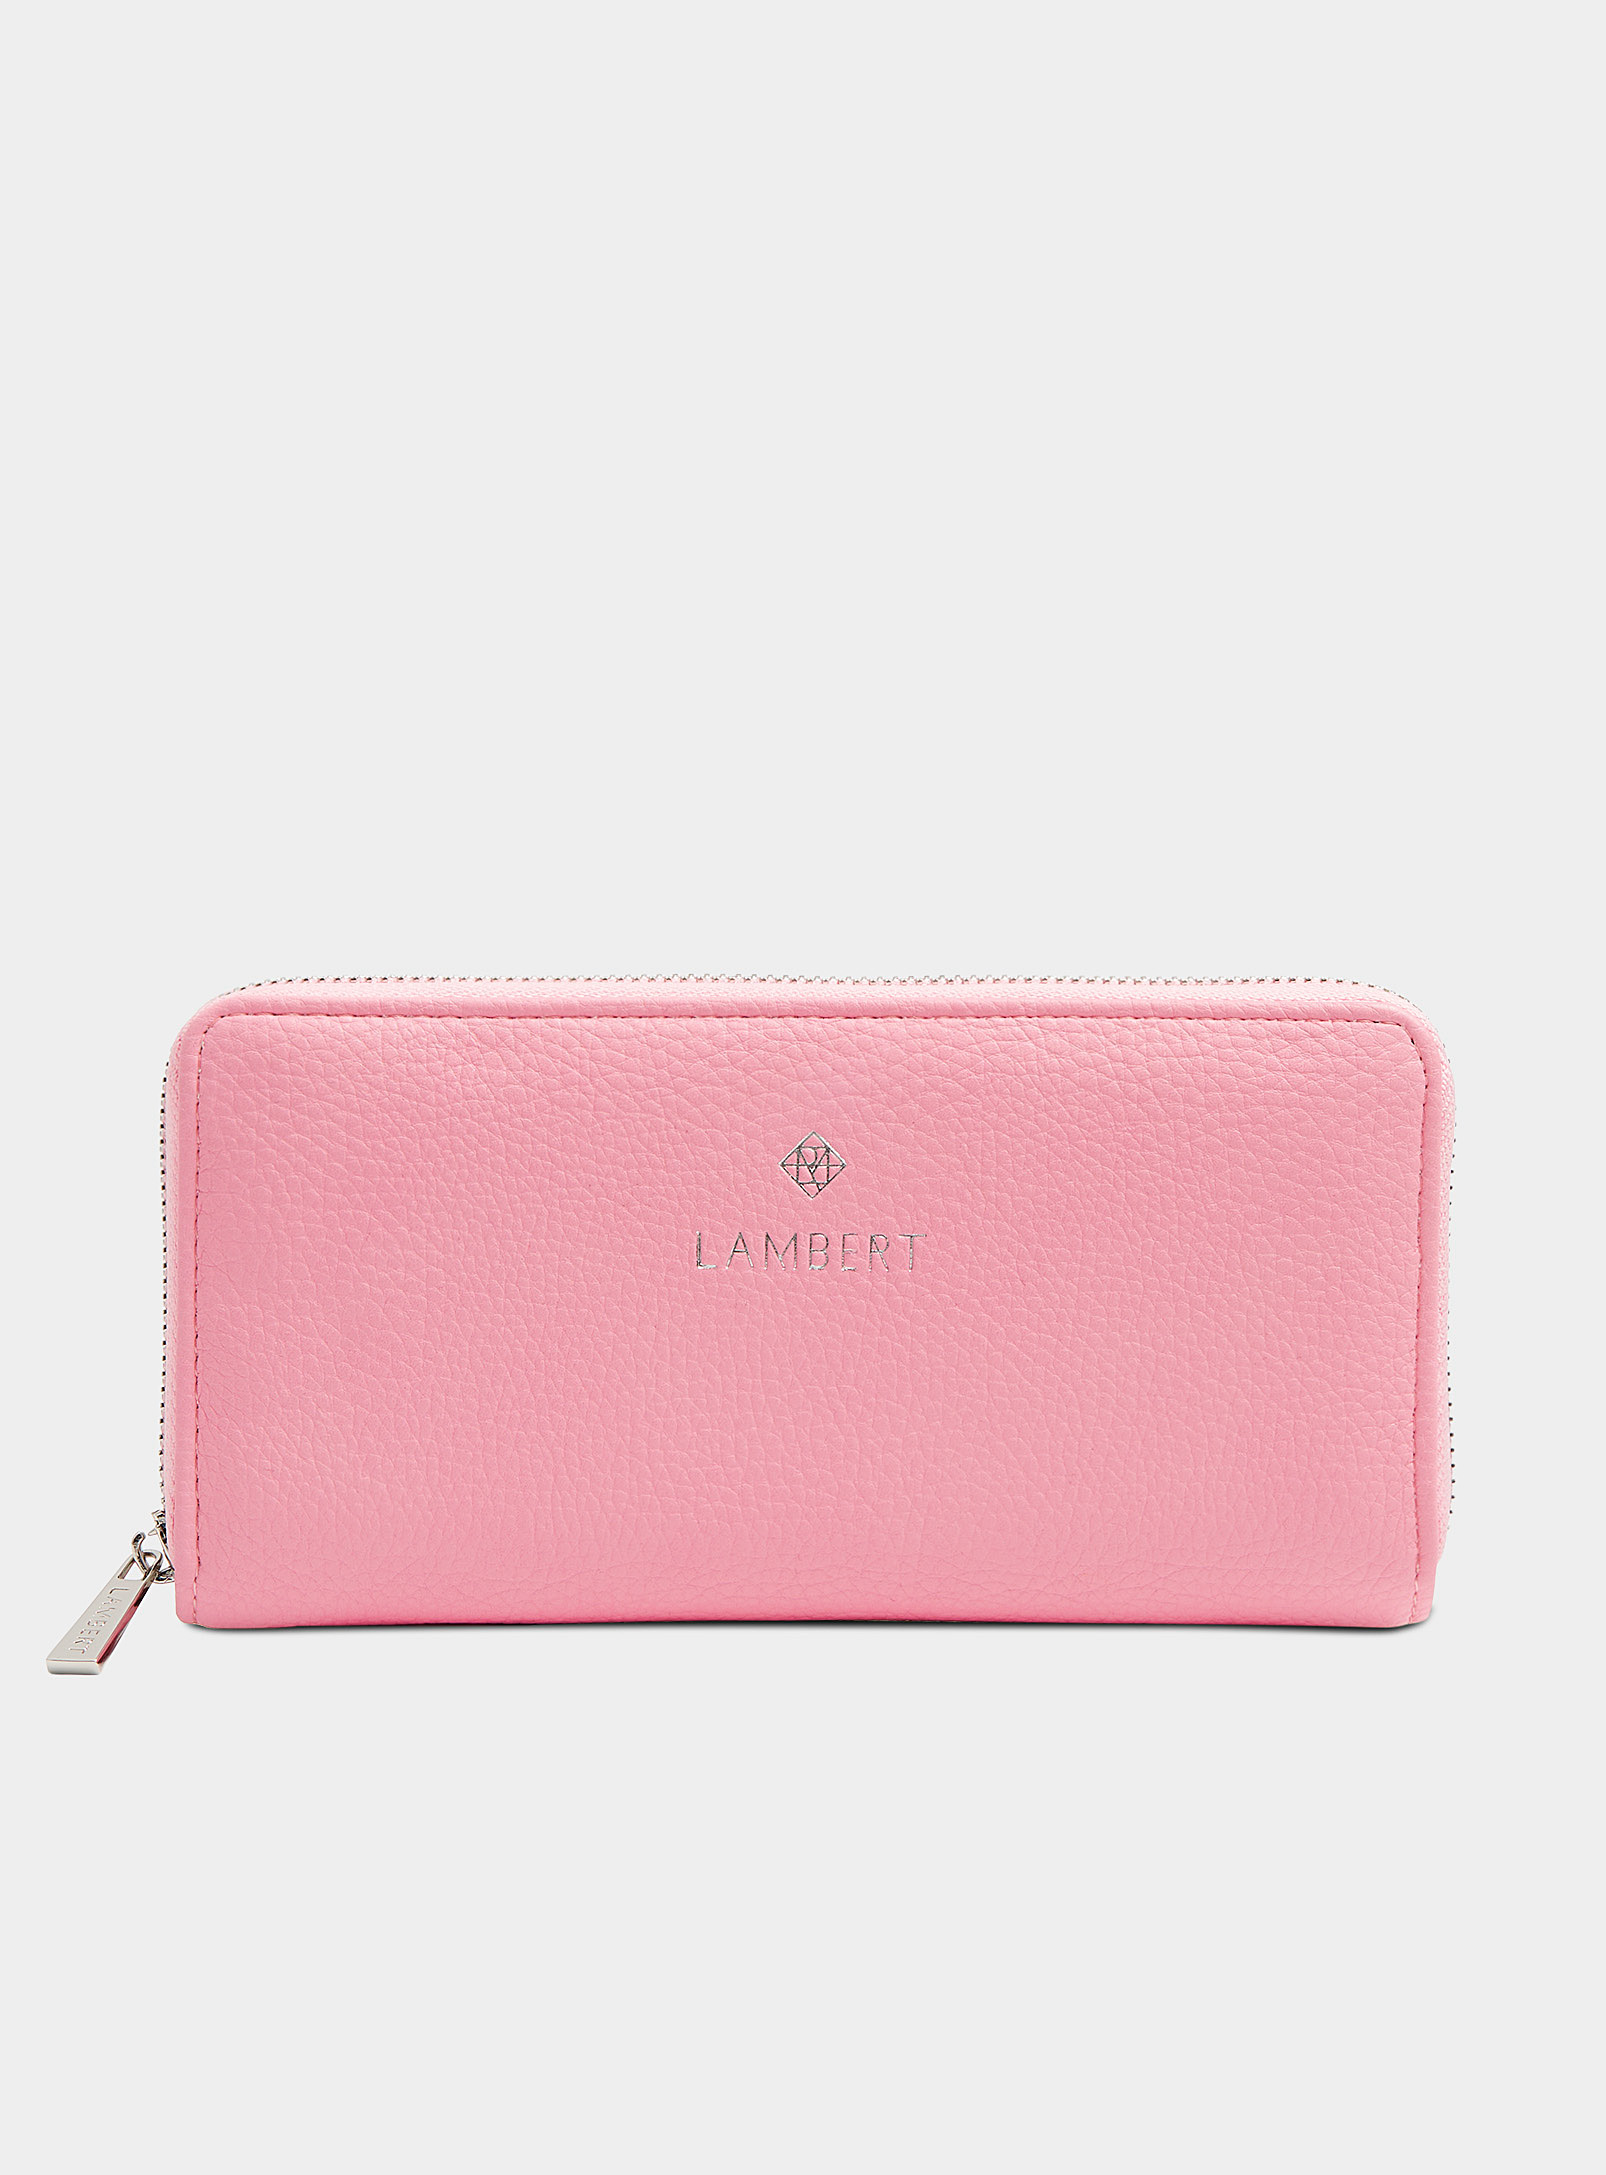 Lambert Meli Zip Wallet In Pink